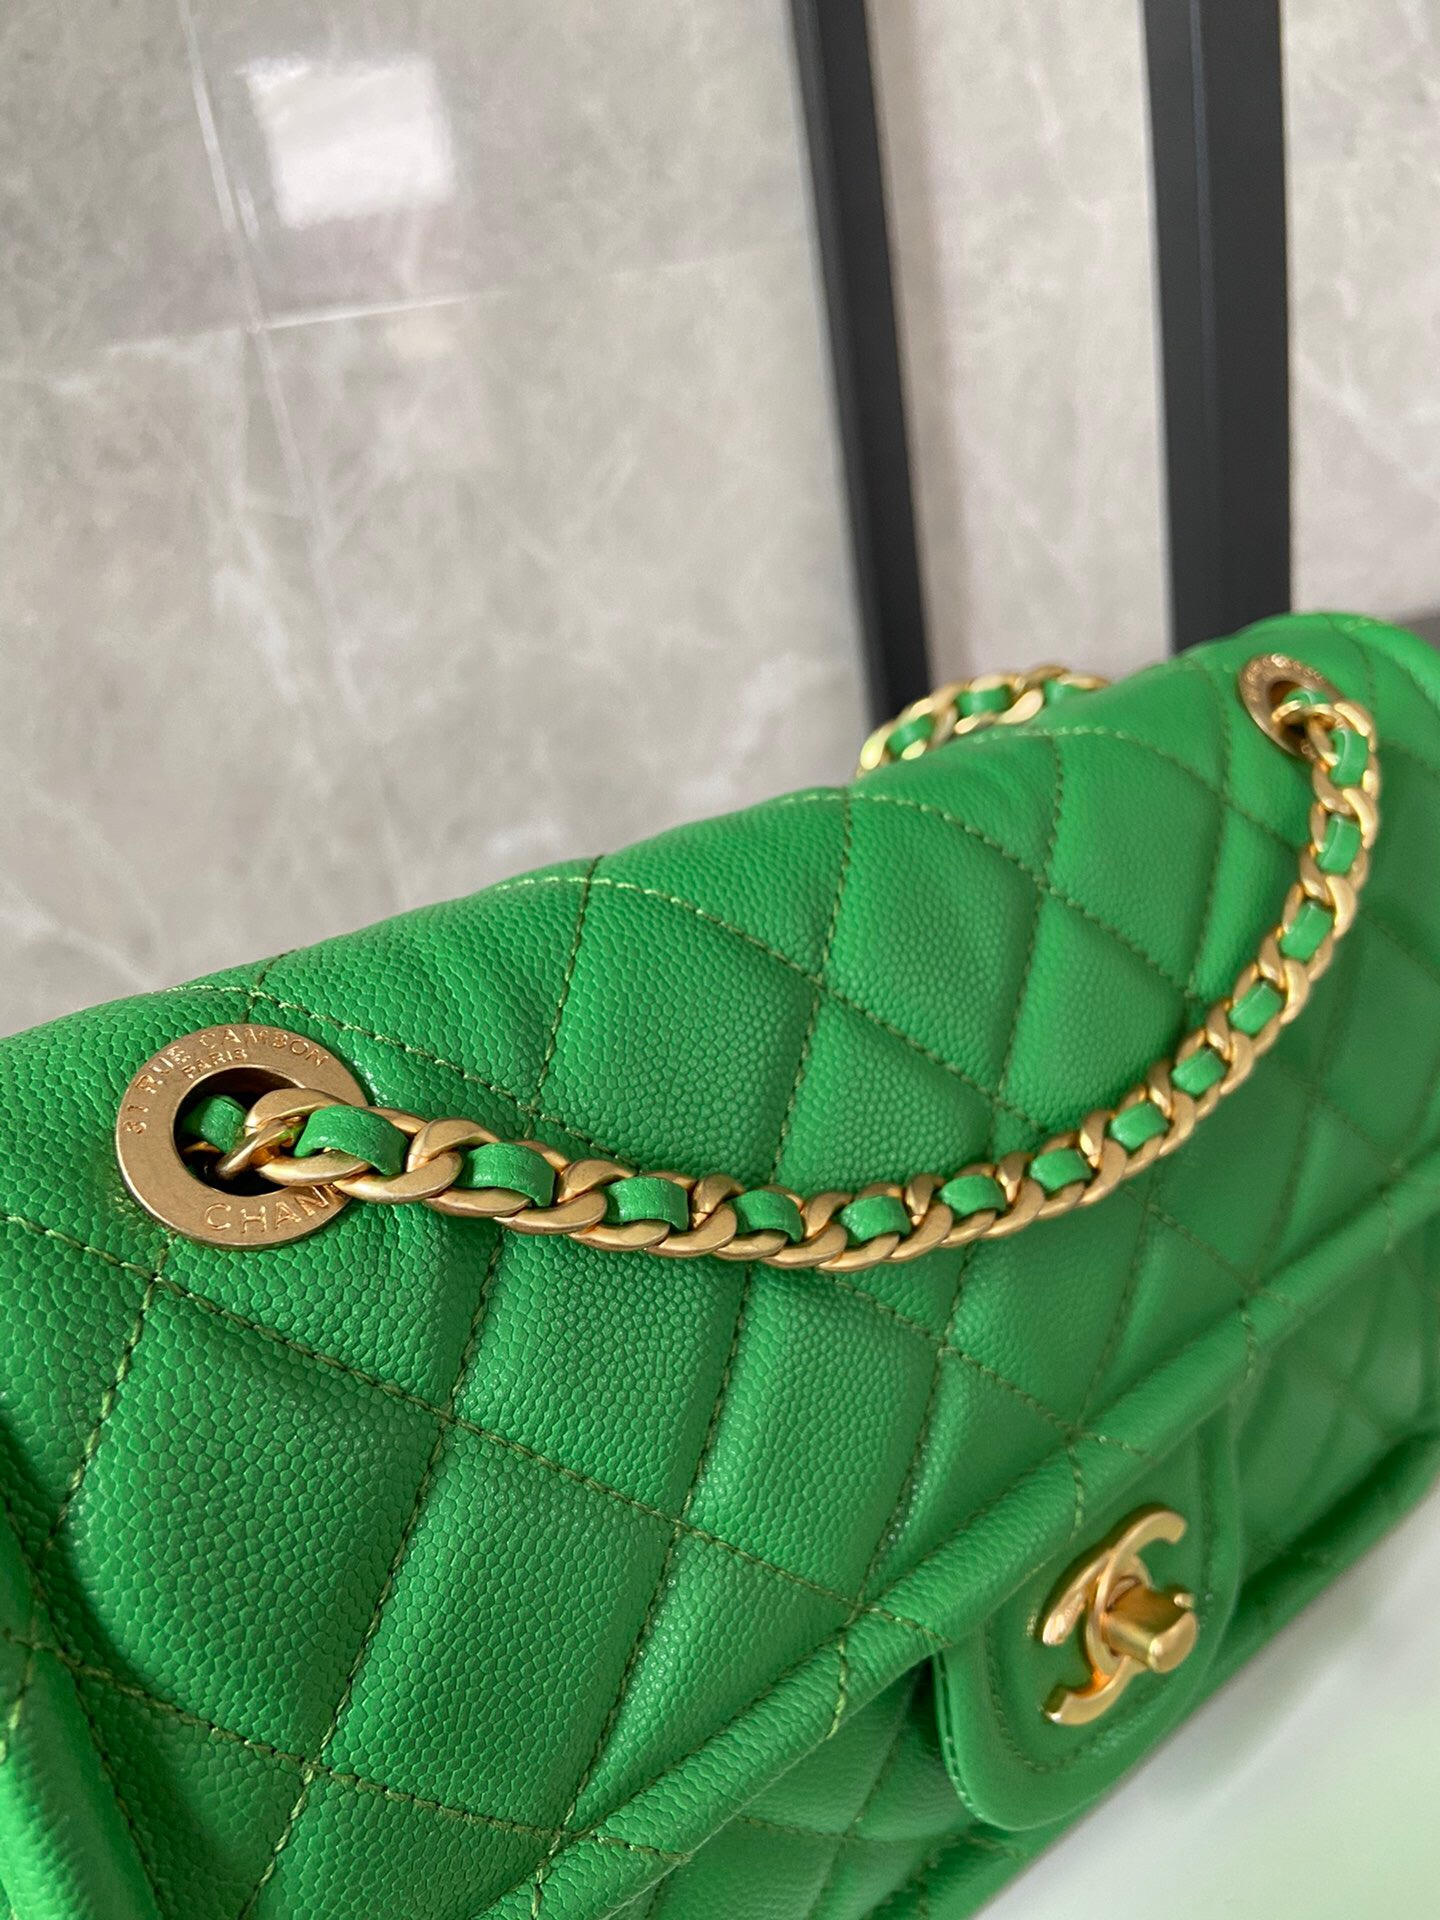 Chanel flap bag Grained Calfskin AS2357 green